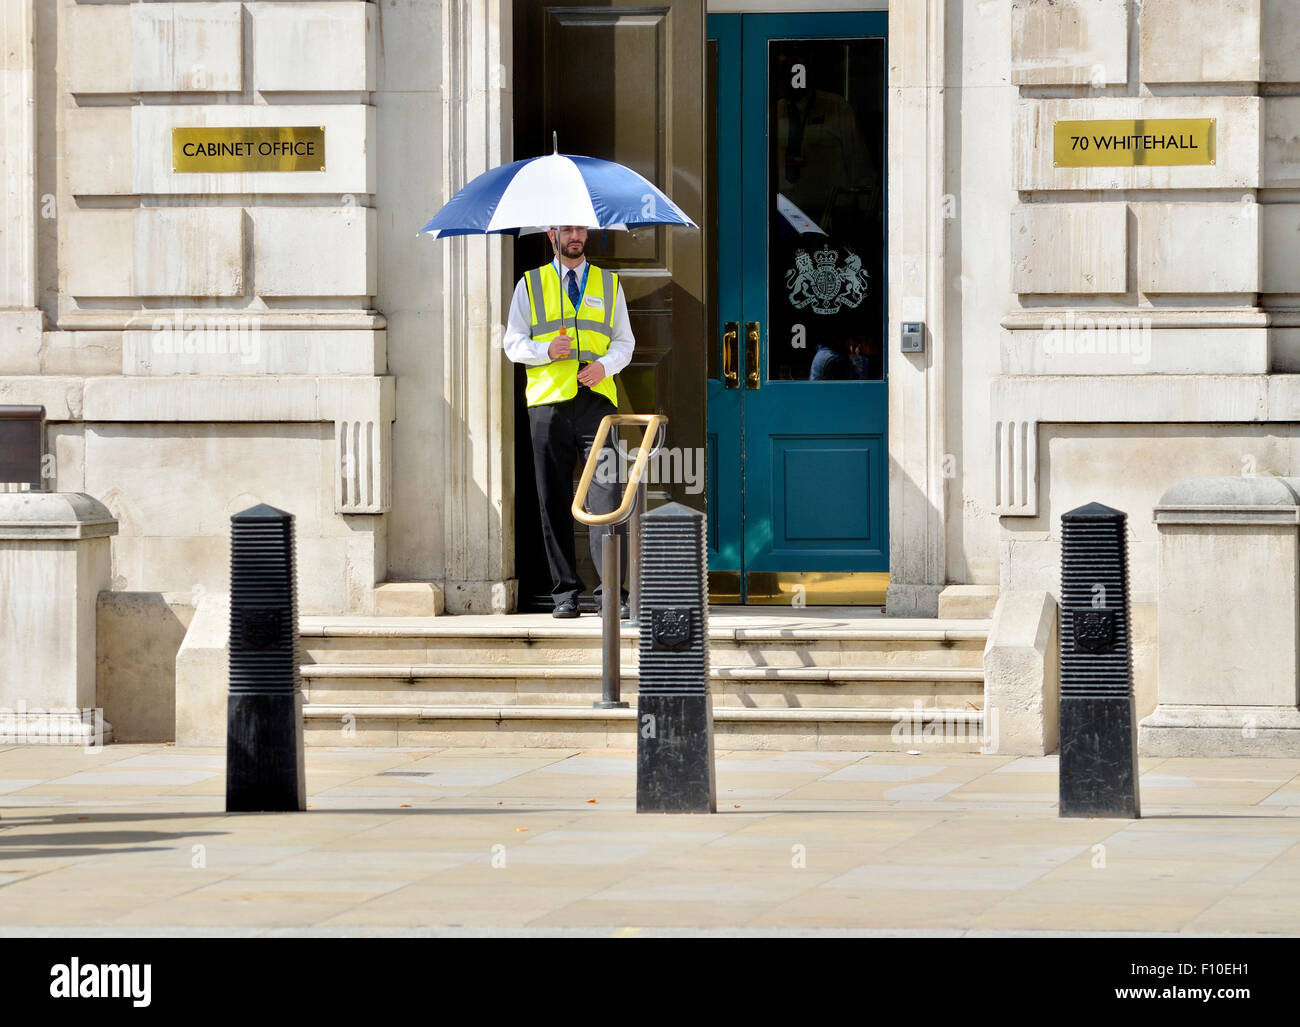 Londra, Inghilterra, Regno Unito. La guardia di sicurezza al di fuori del Cabinet Office, 70 Whitehall, tenendo un ombrello in una giornata di sole nel mese di agosto Foto Stock